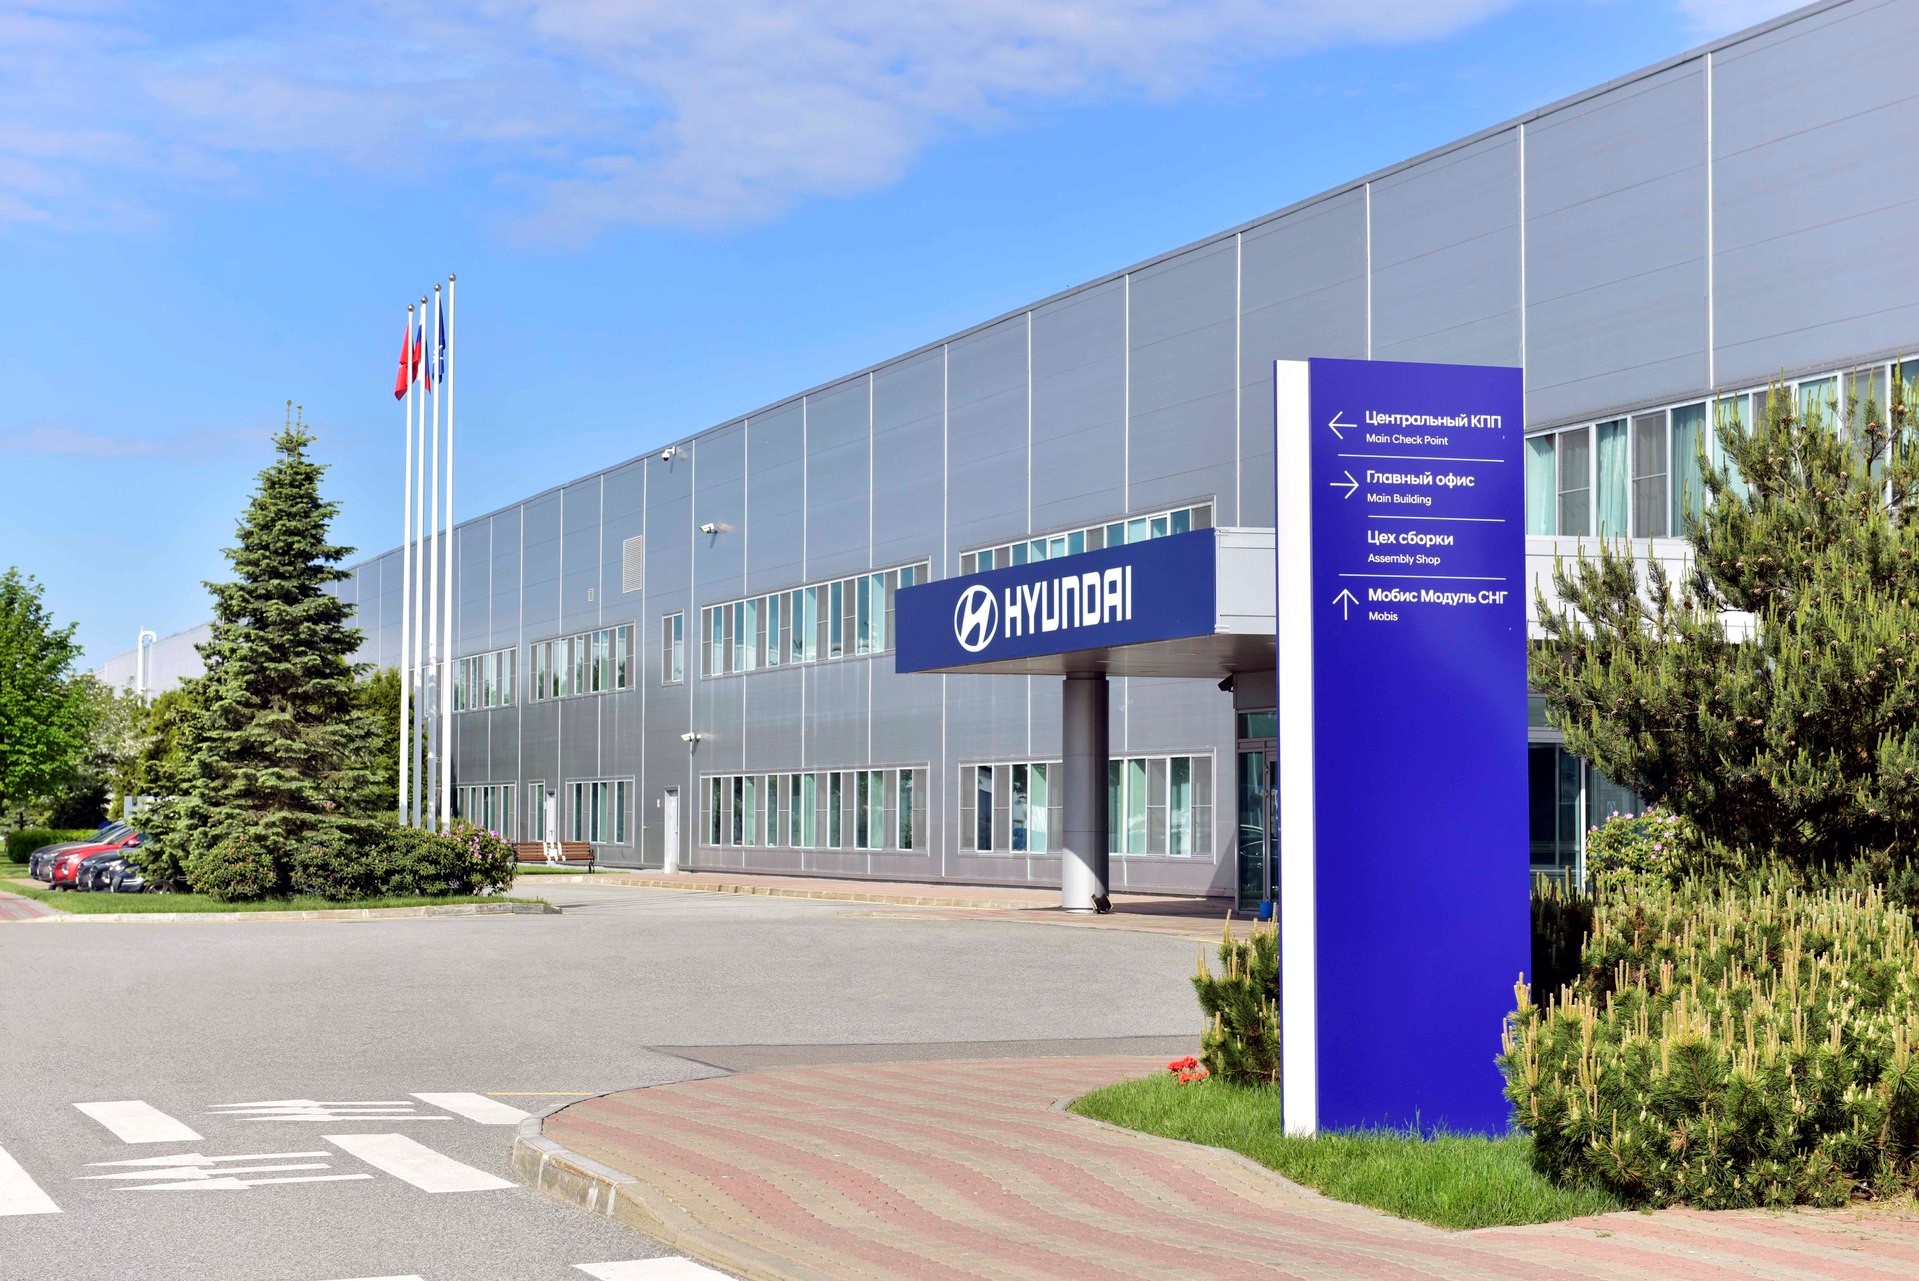 В первом полугодии завод Hyundai увеличил объемы производства, подготовился к запуску нового поколения Creta и начал экспорт компонентов 